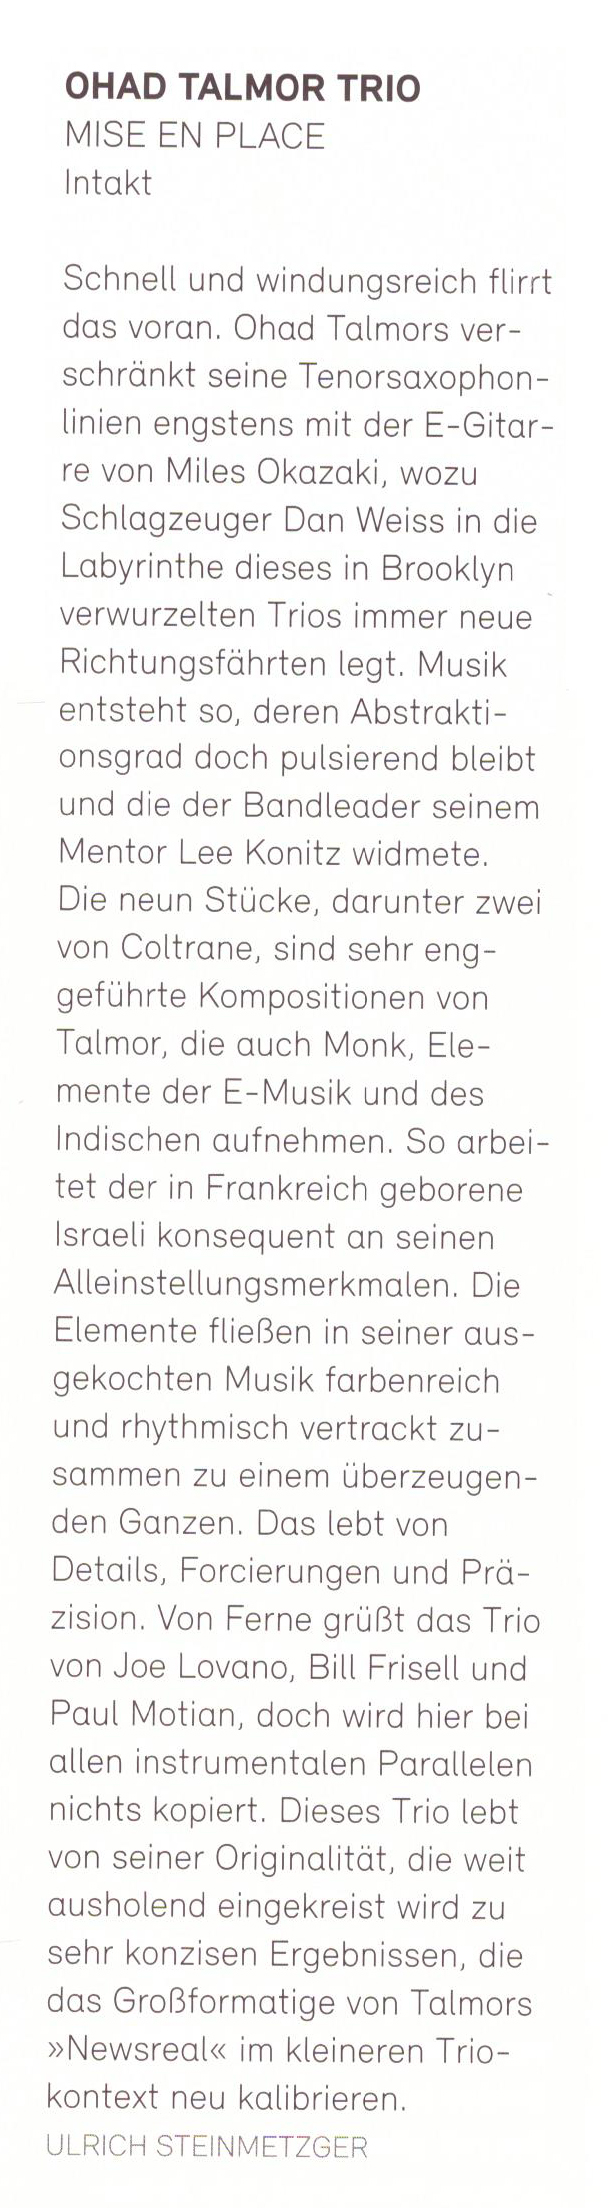 Ulrich Steinmetzger, Jazz Podium Magazine, Dec 2021 (DE)